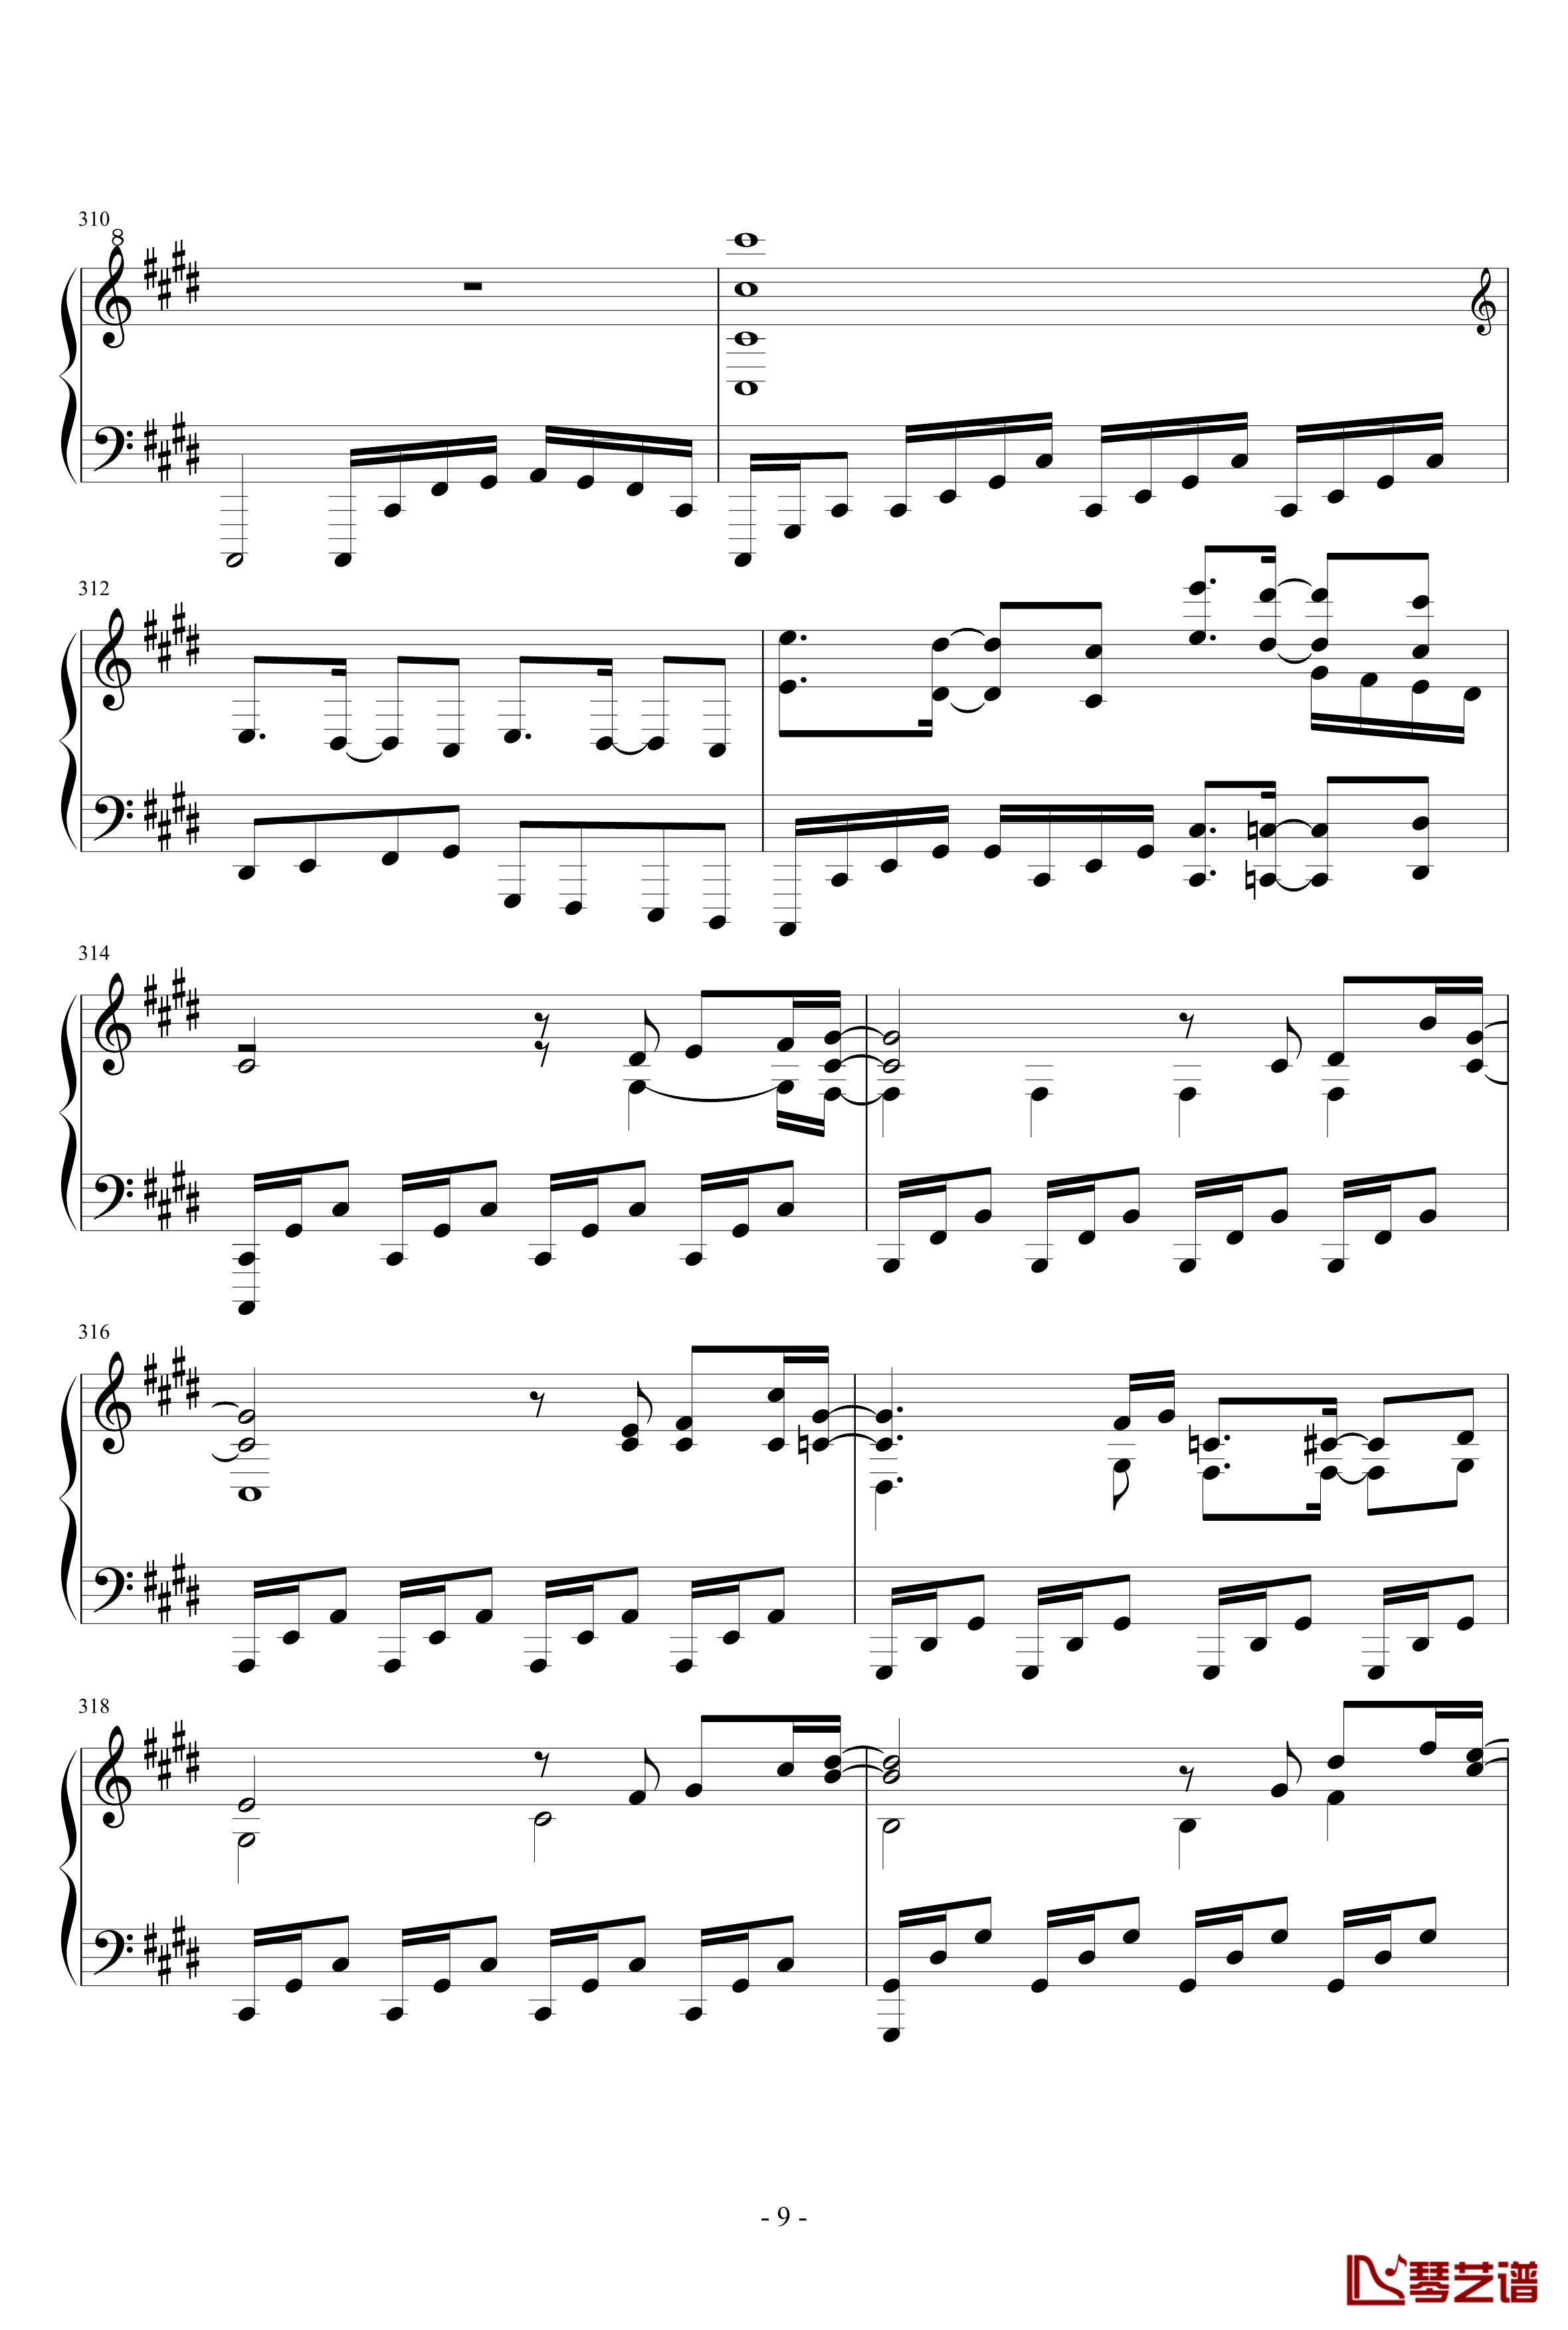 東方連奏曲II Pianoforte钢琴谱-第二部分-东方project9